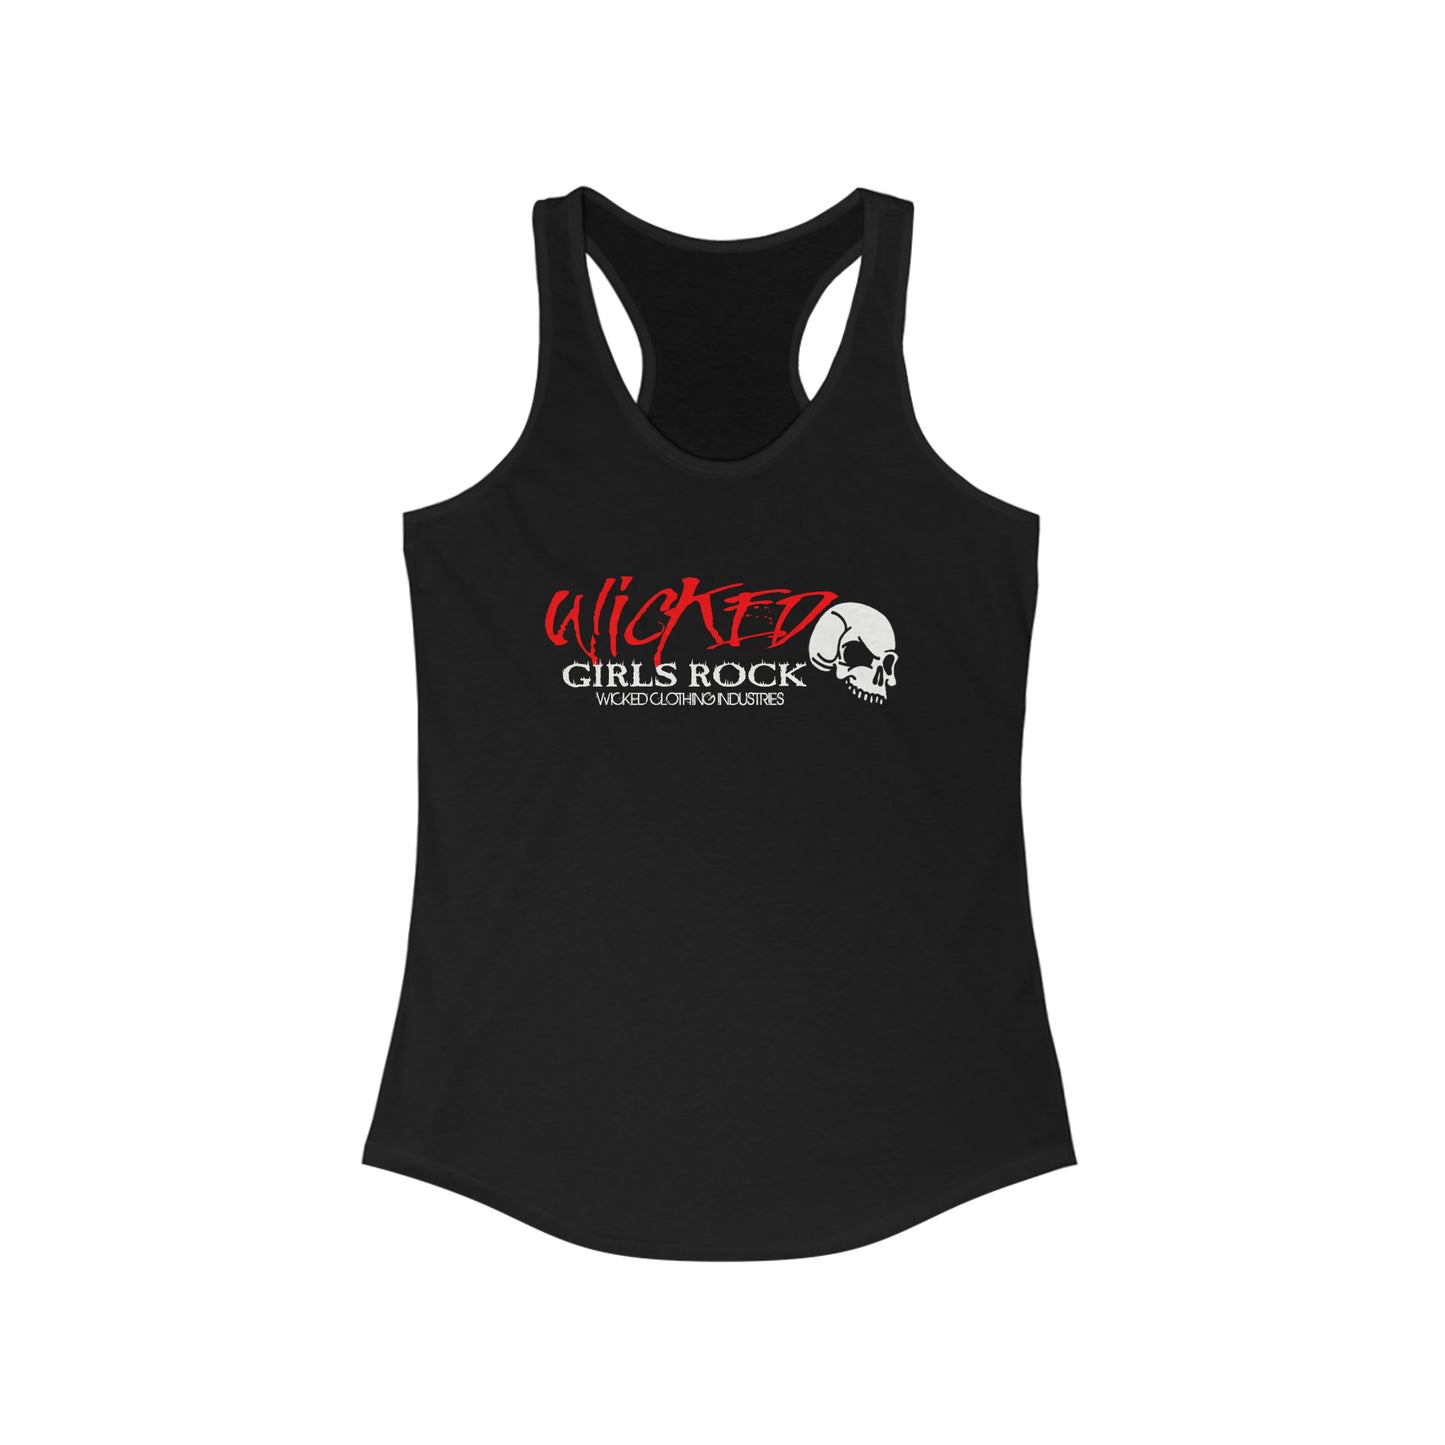 Wicked Girls Rock /Racerback Tank Top